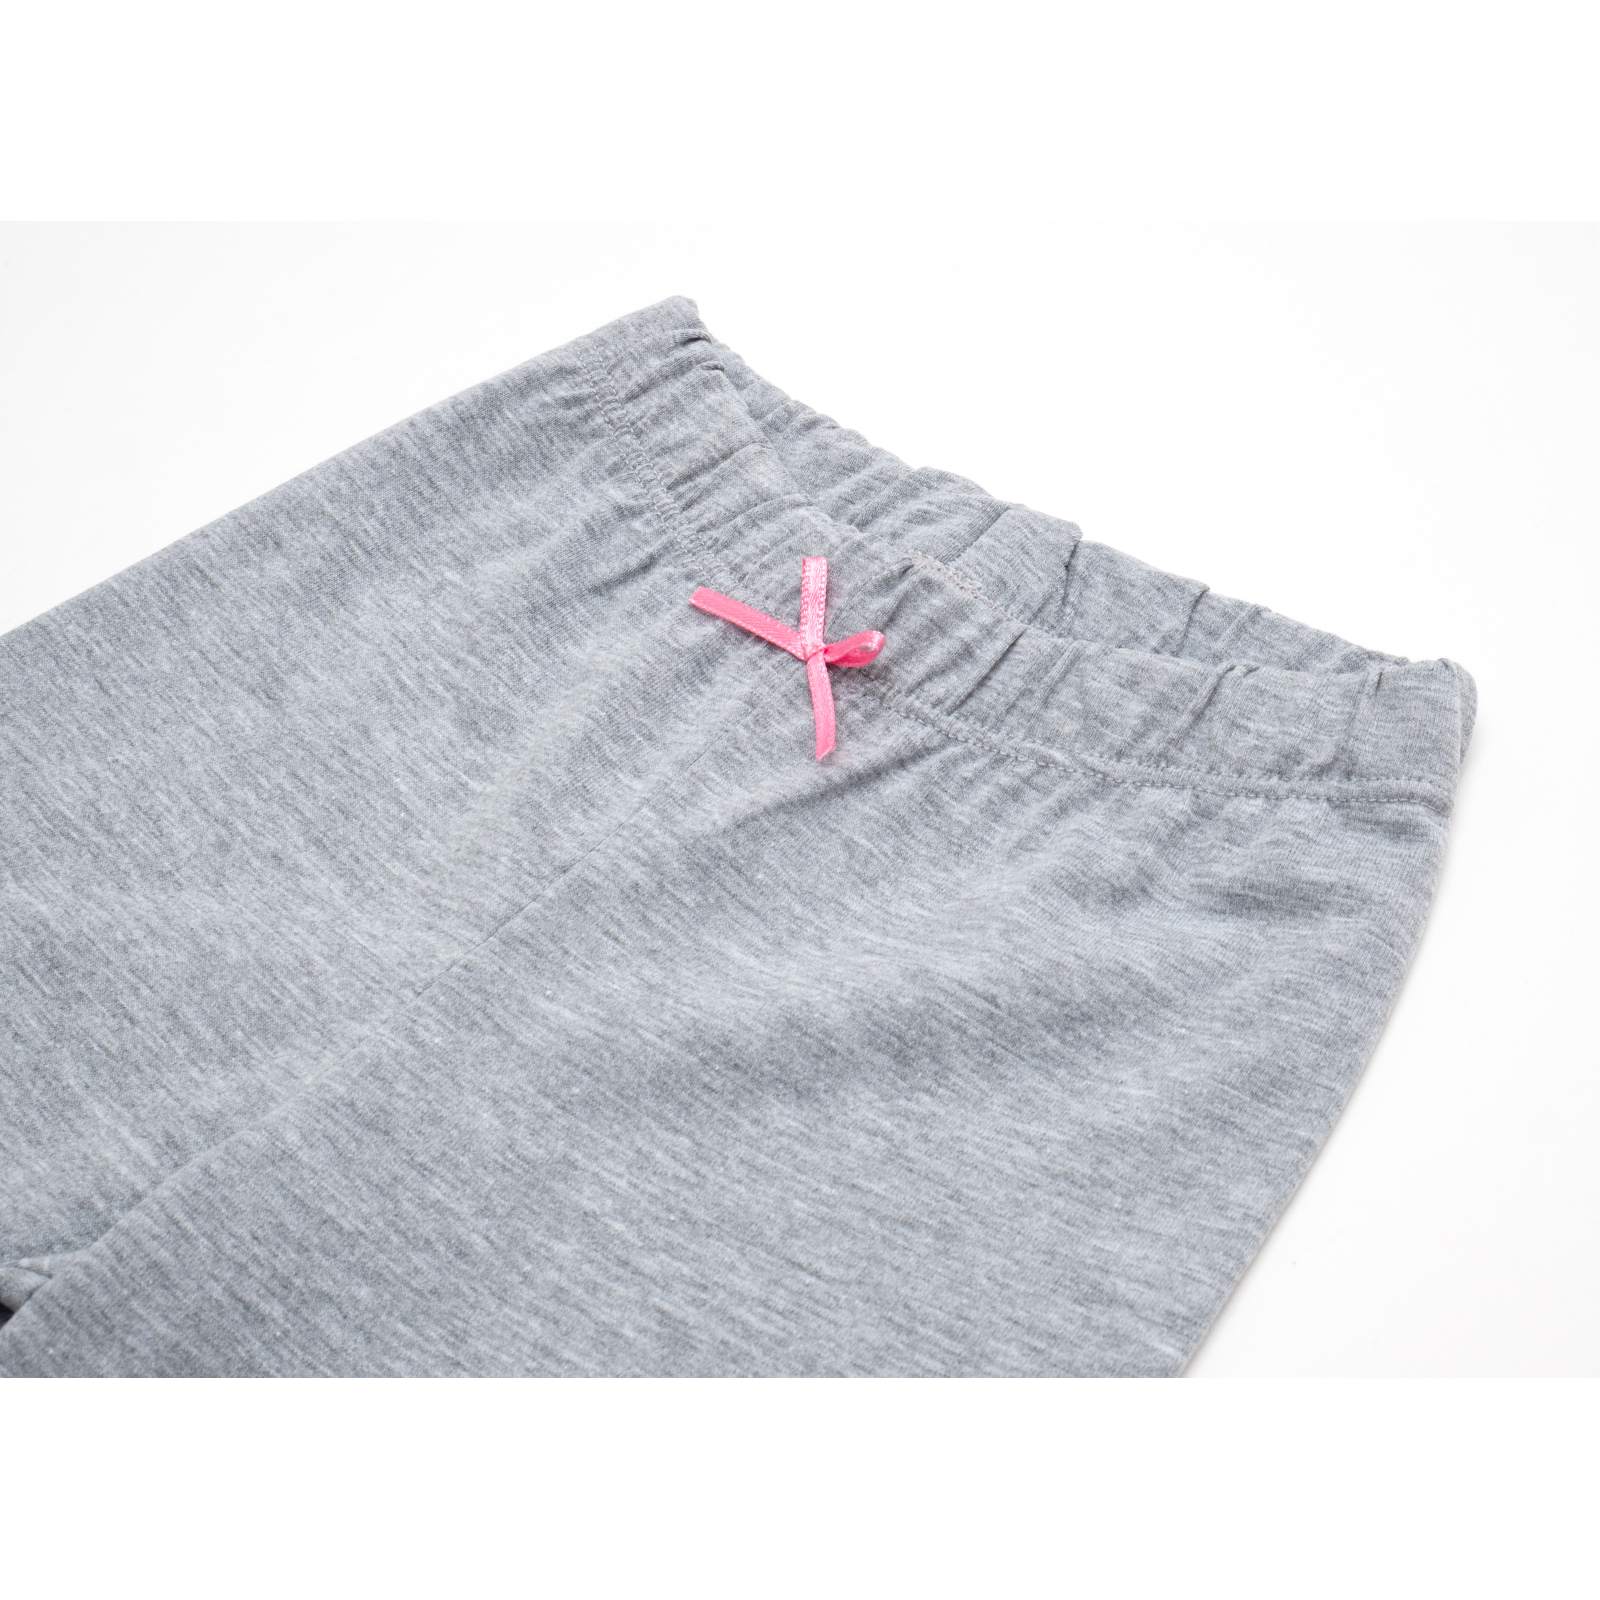 Пижама Matilda со звездочками (7167-98G-pink) изображение 8